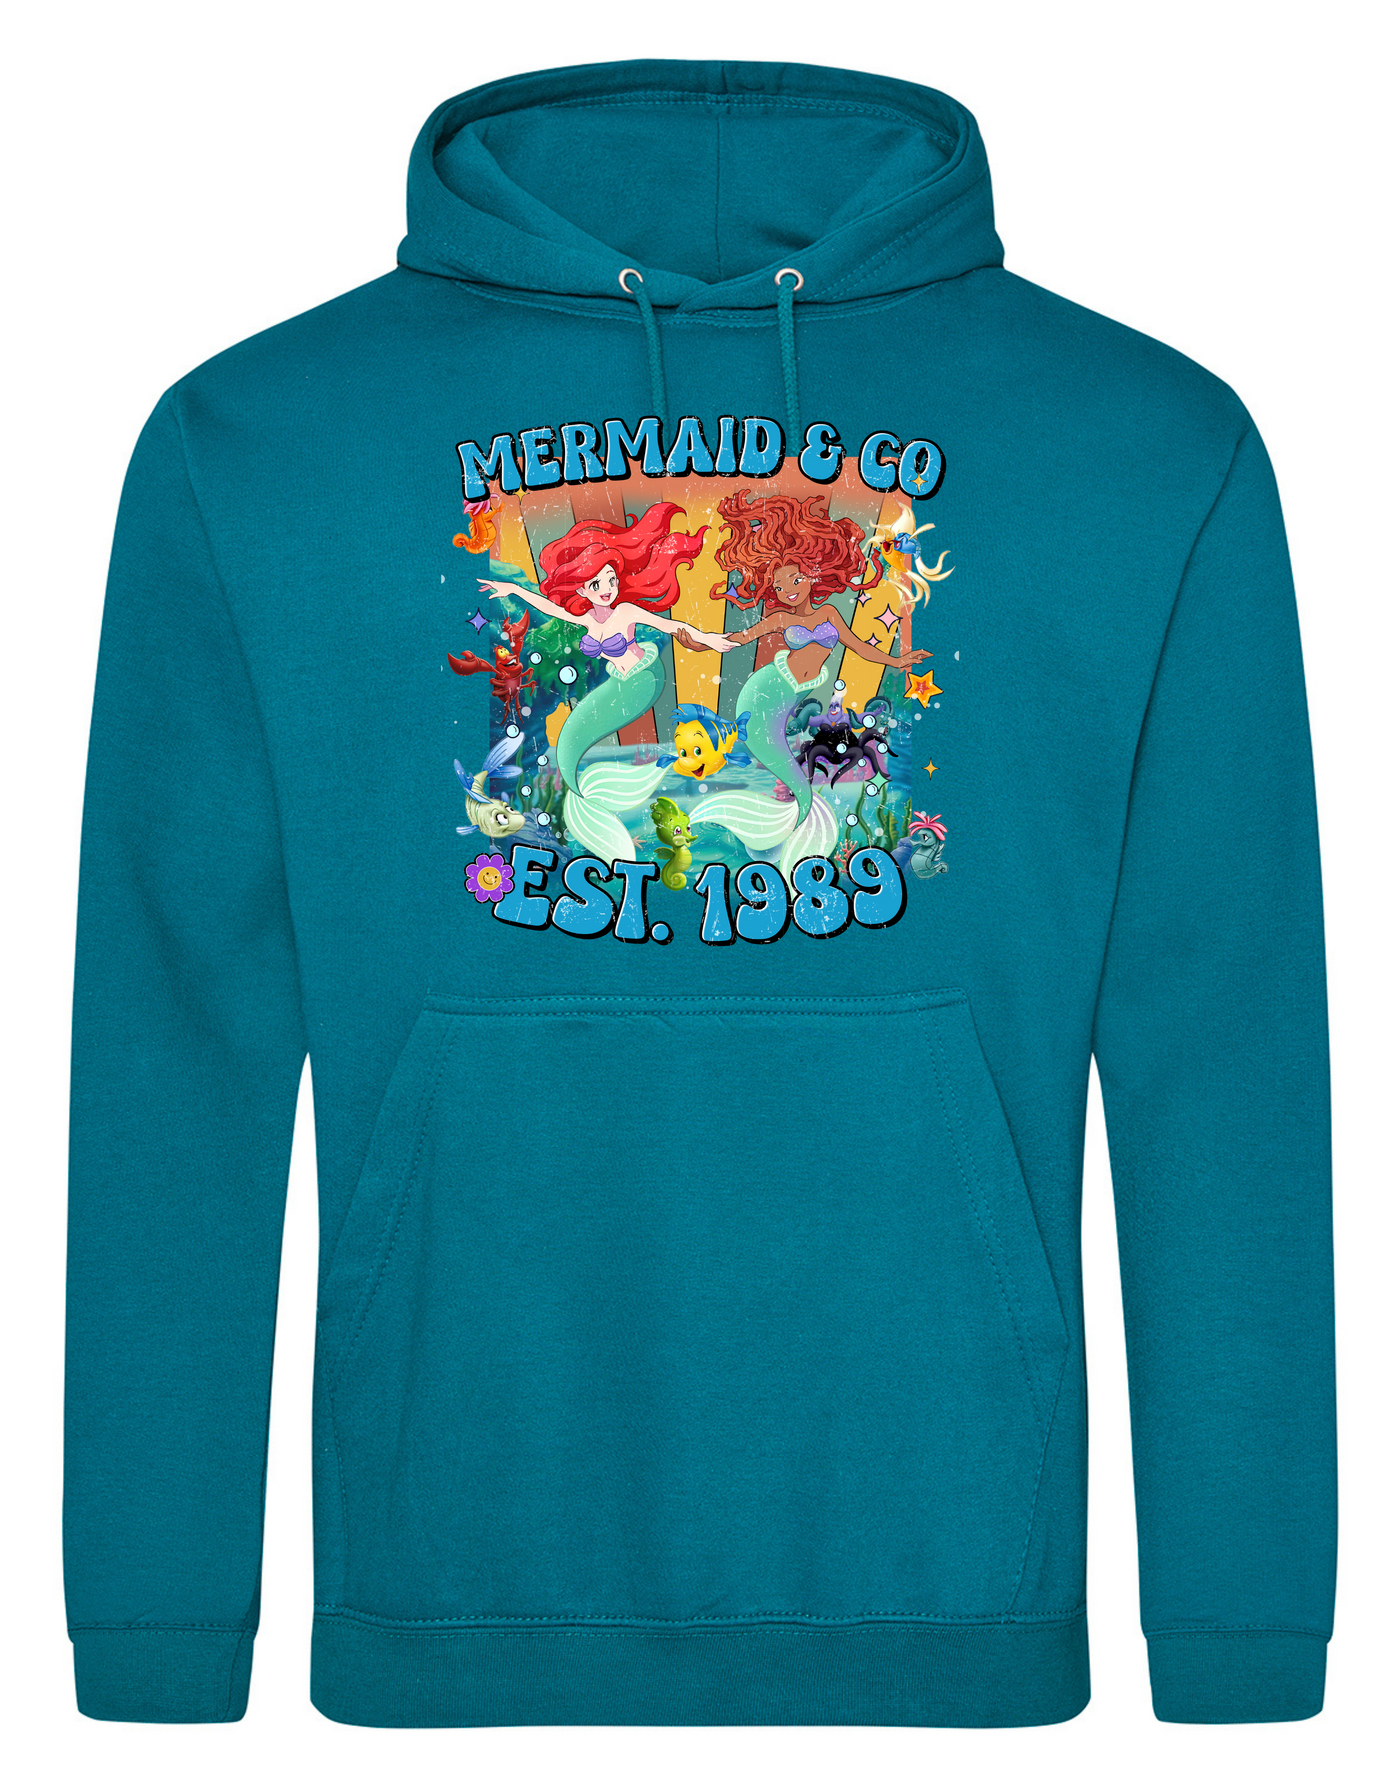 "Mermaid & Co" Friends Standard Hoodie